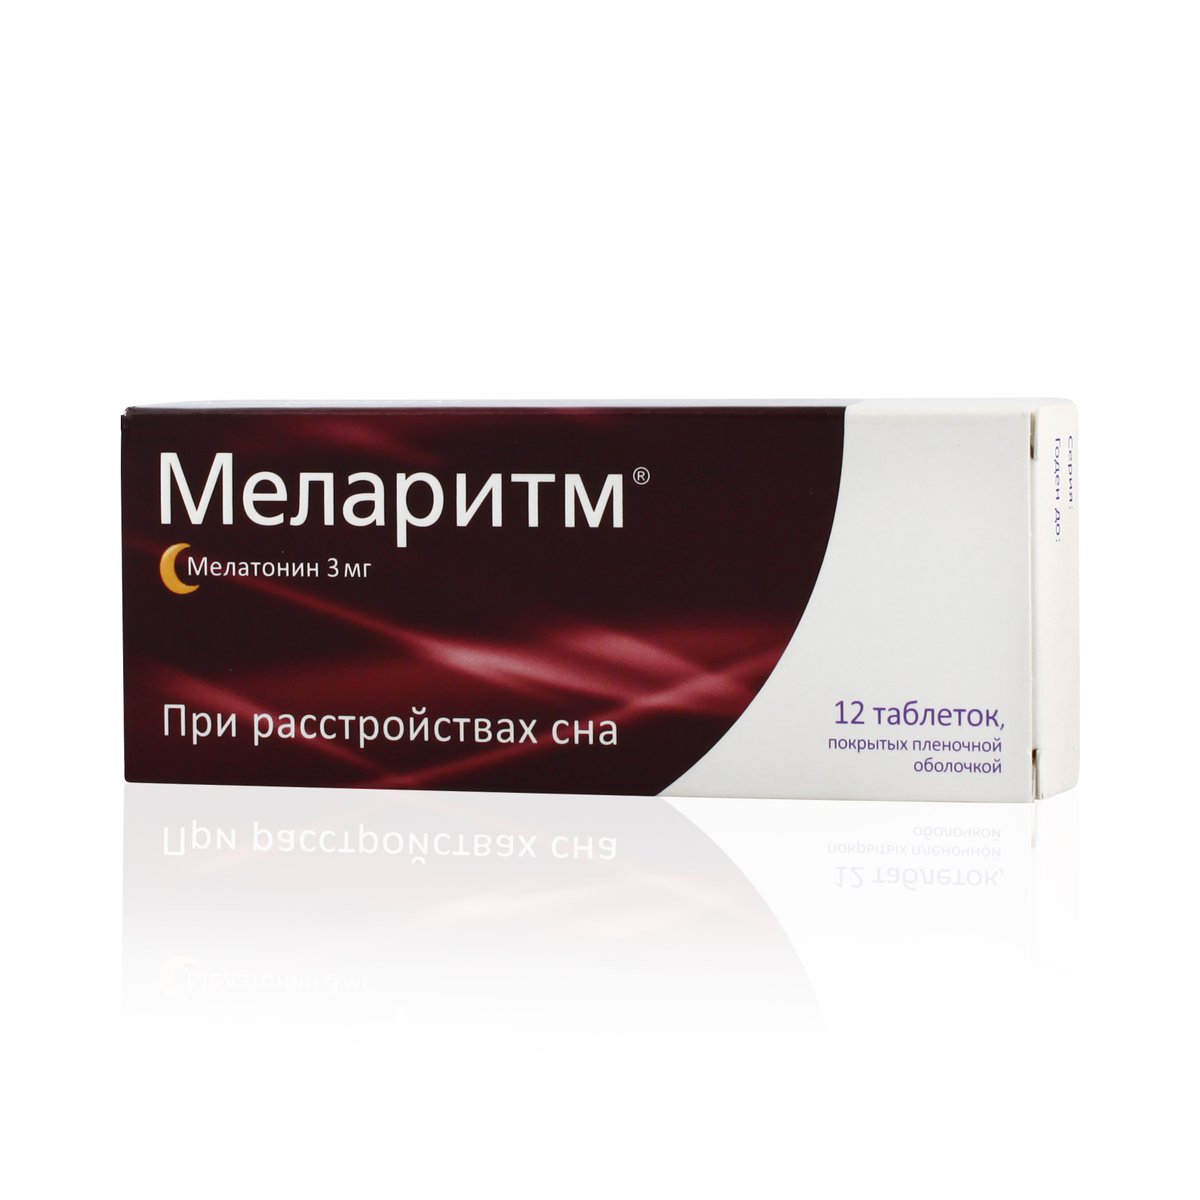 Меларитм (таблетки, 12 шт, 3 мг) - цена,  онлайн  .